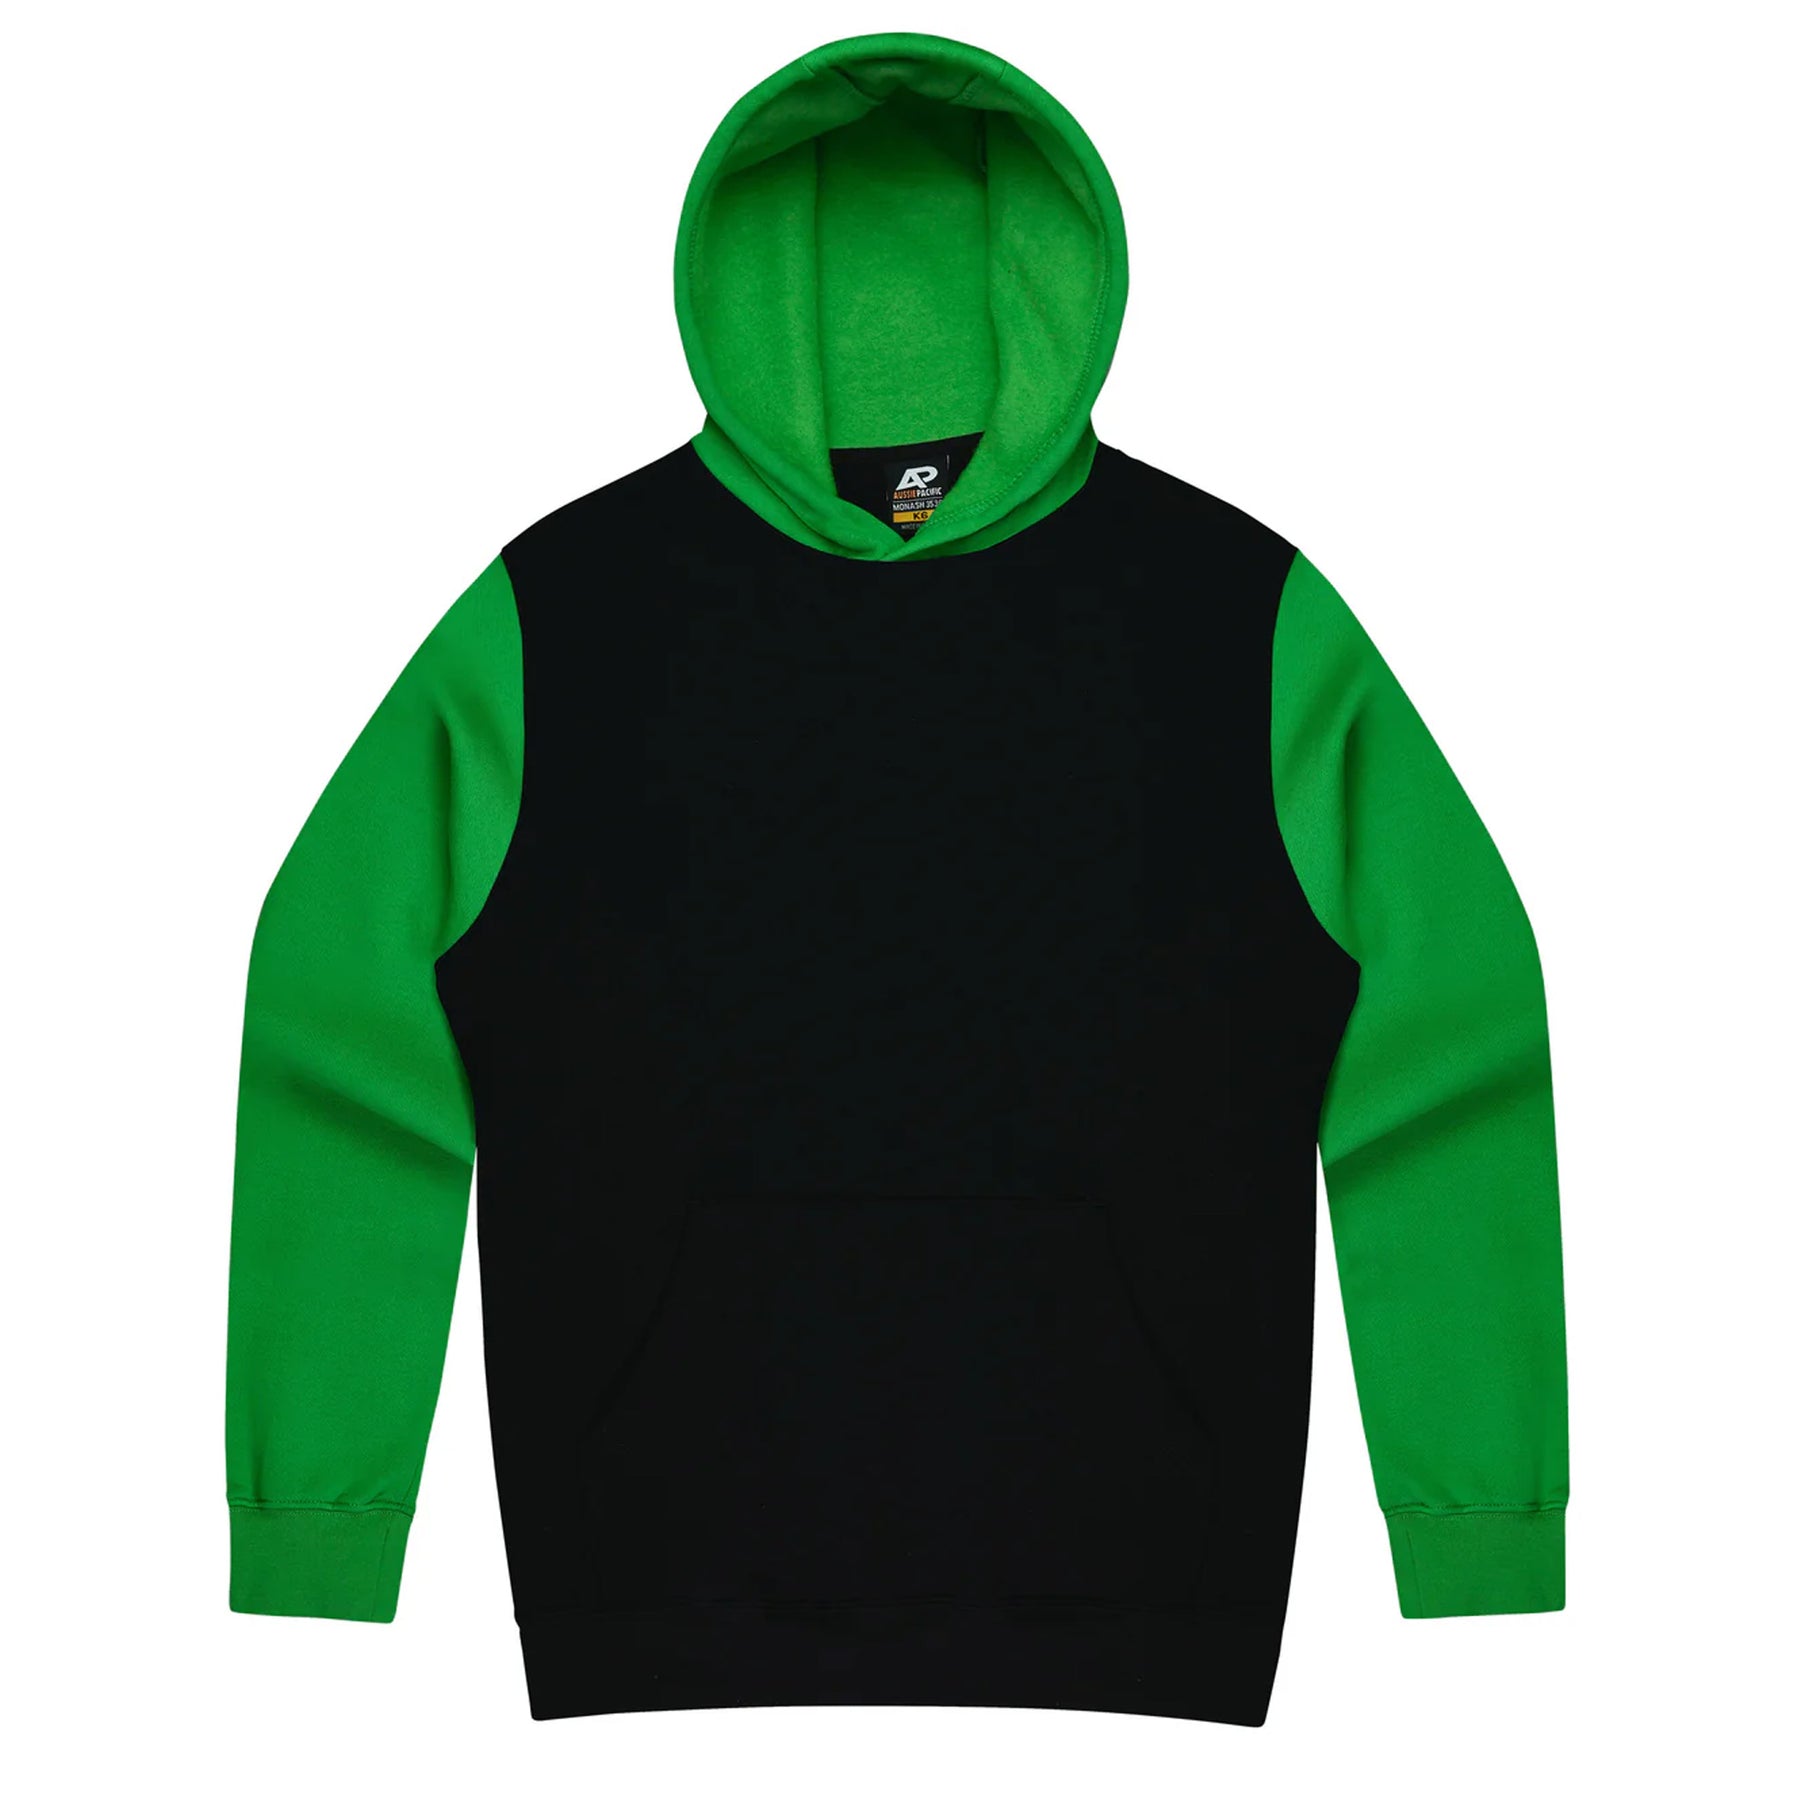 aussie pacific monash kids hoodie in black kawa green